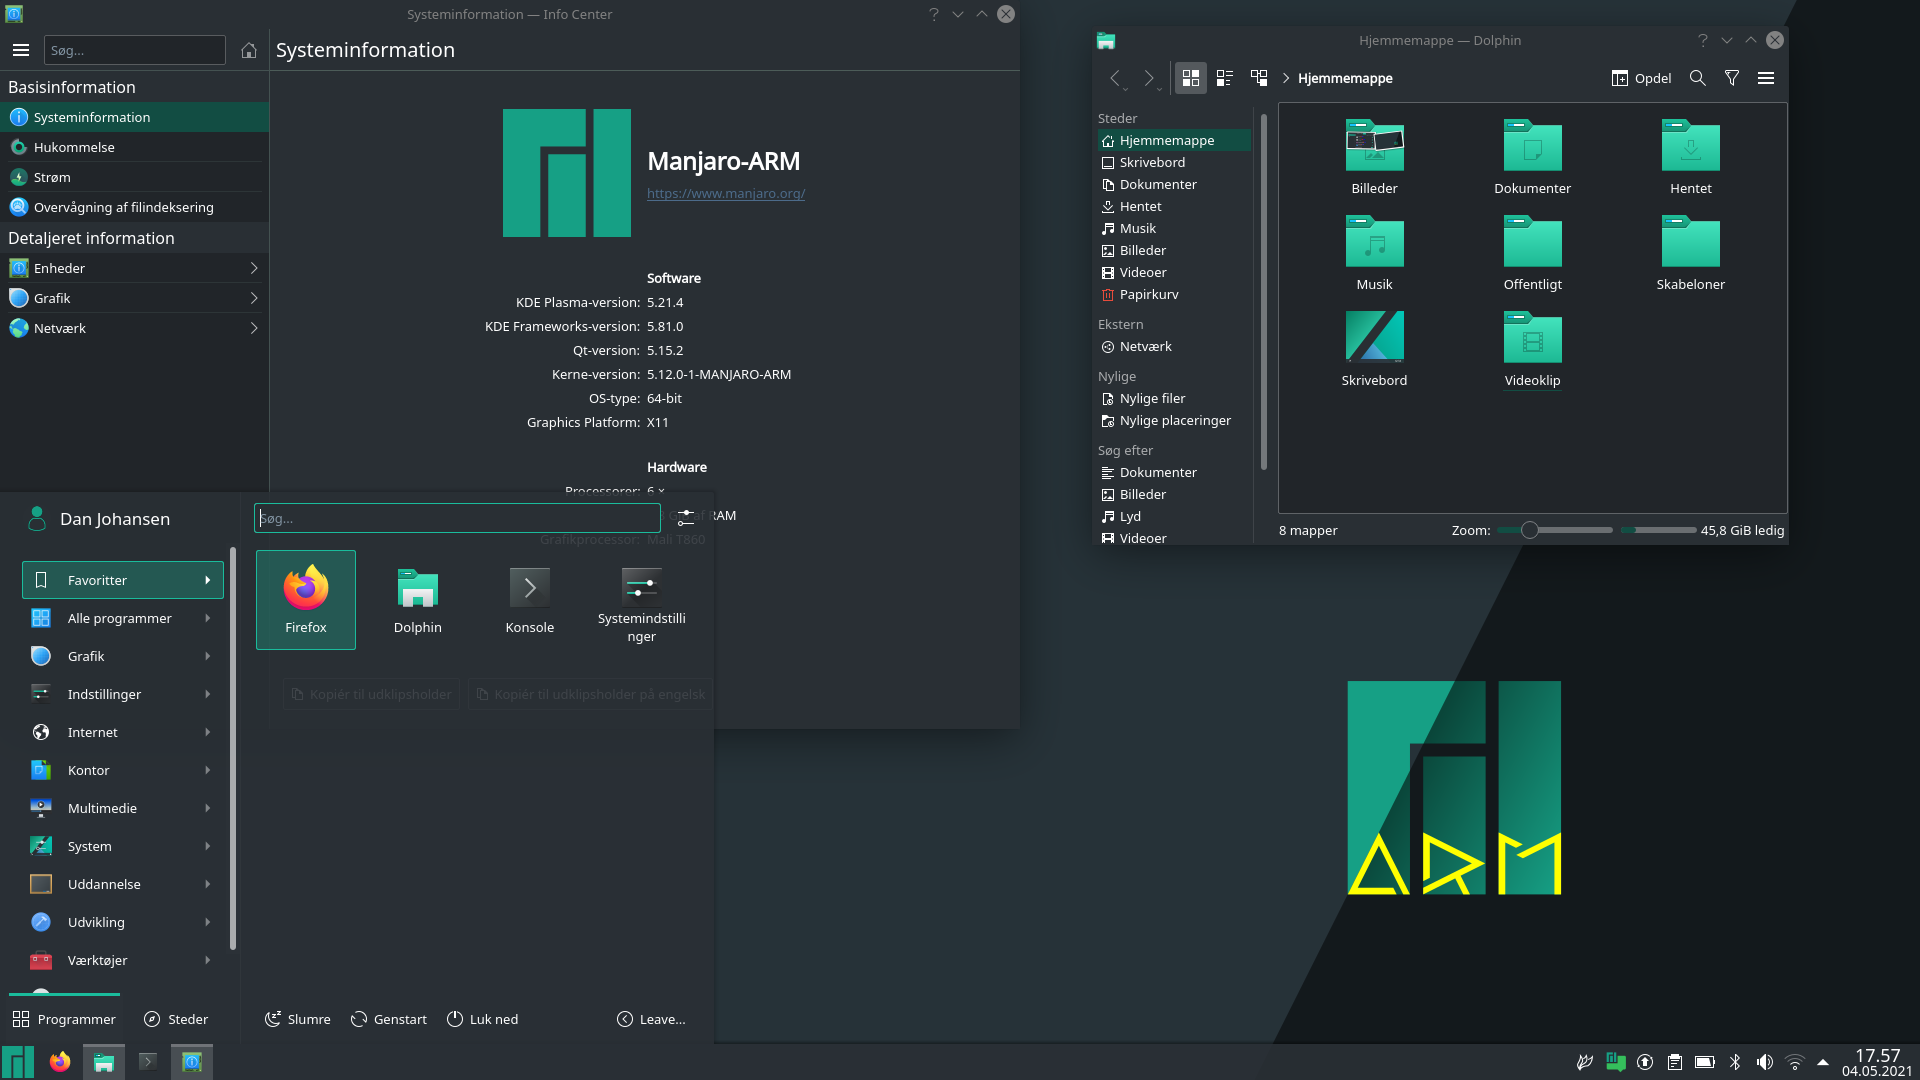 KDE of Manjaro